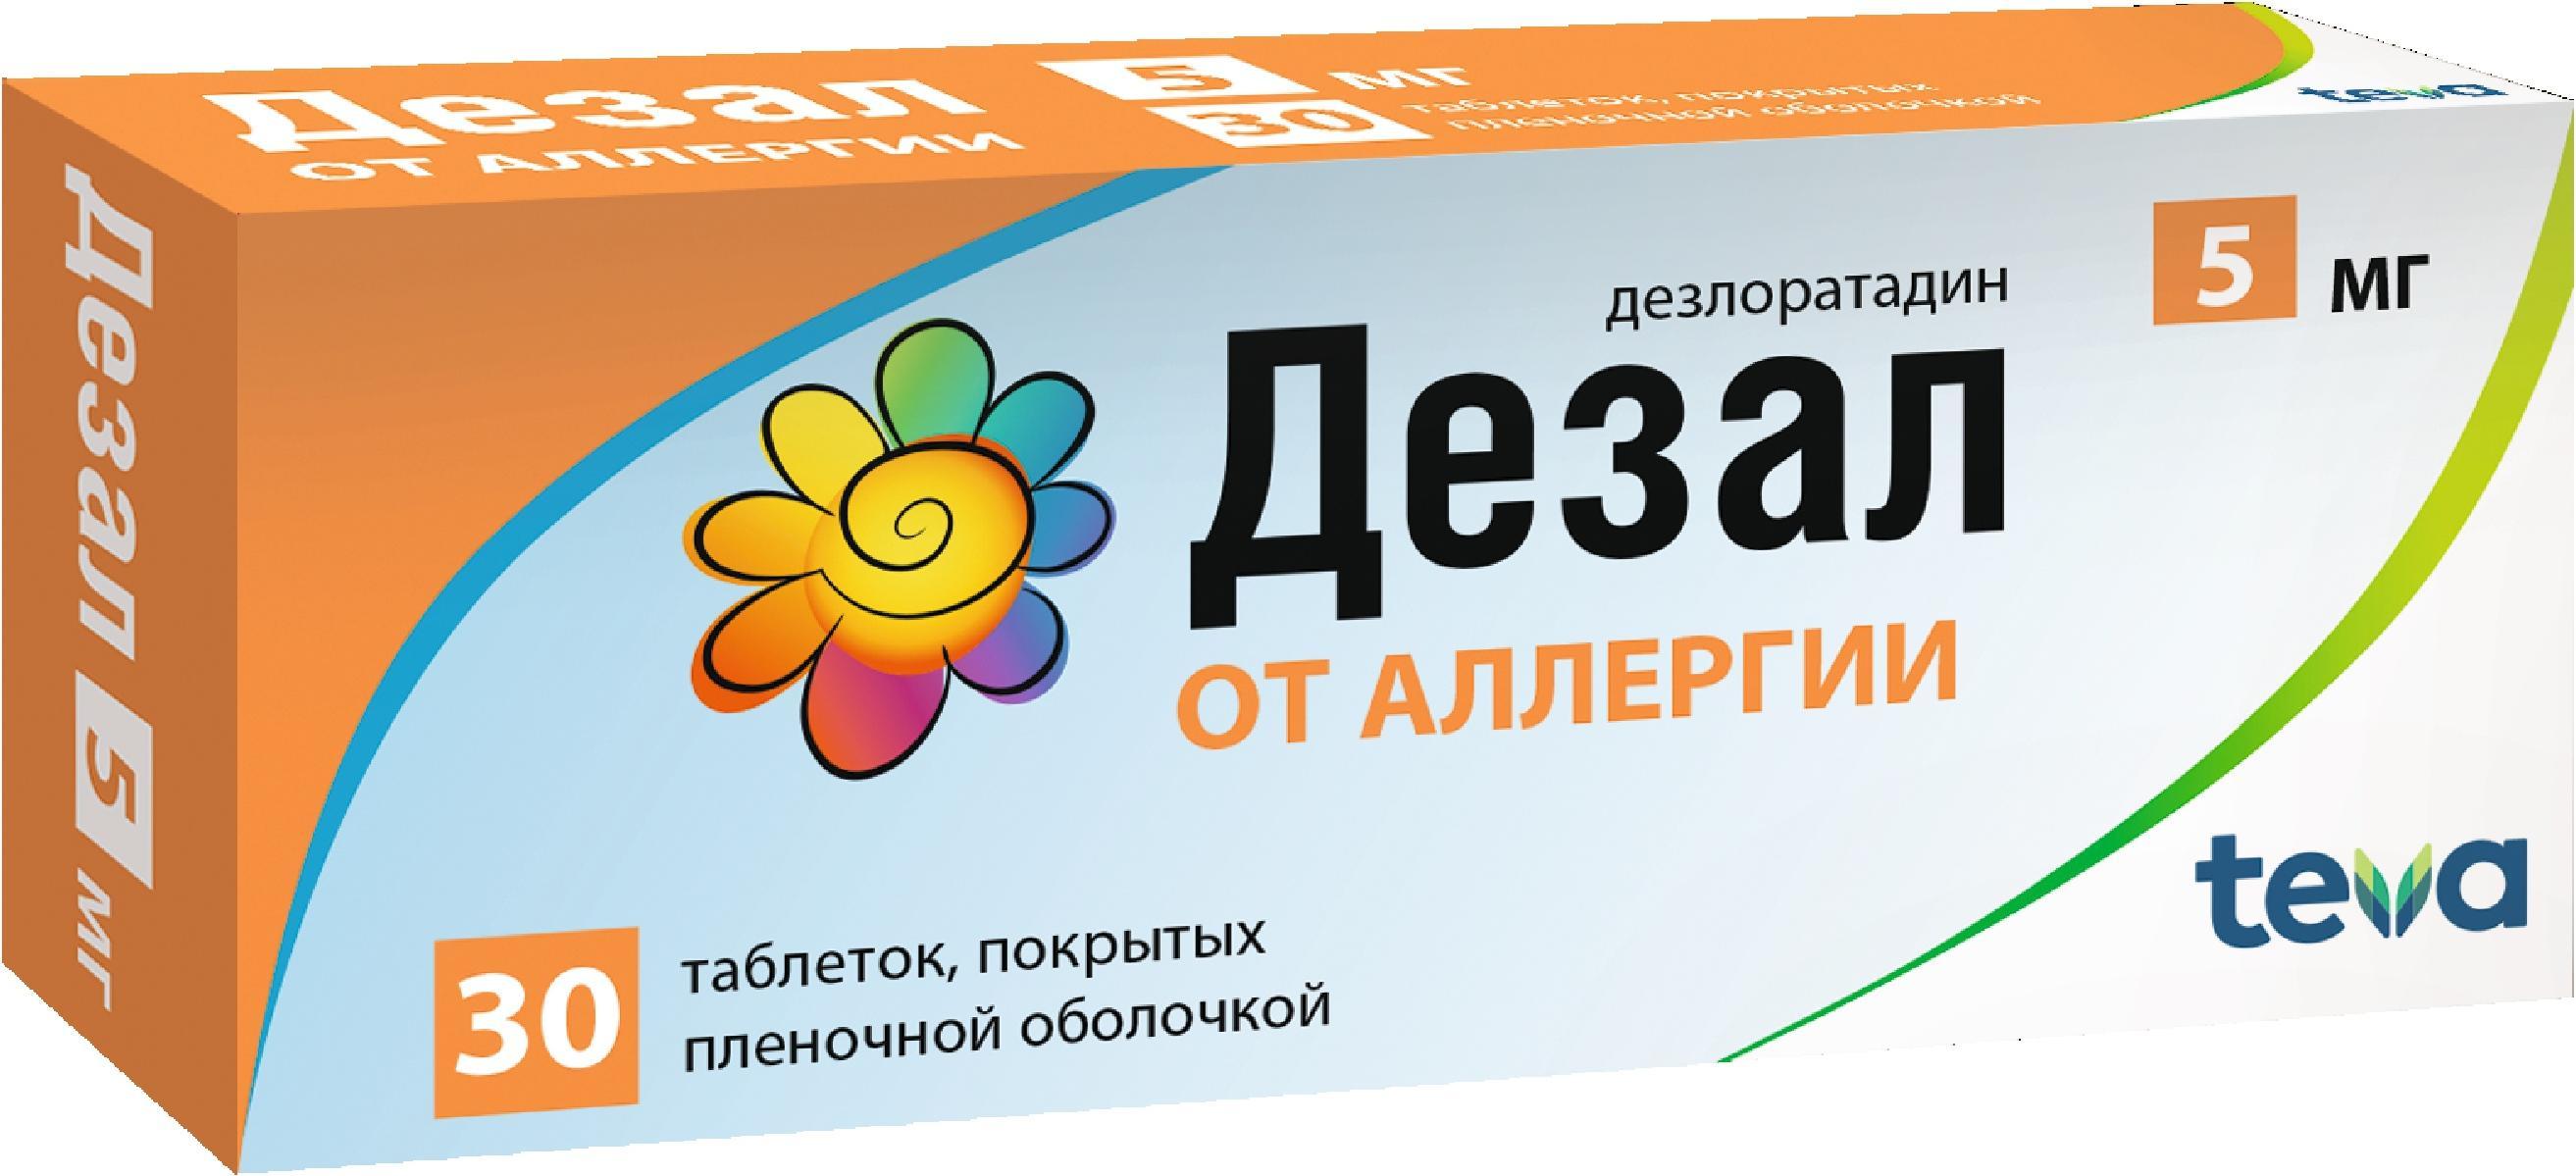 Купить Дезал таблетки покрытые пленочной оболочкой 5мг 30 шт., Actavis